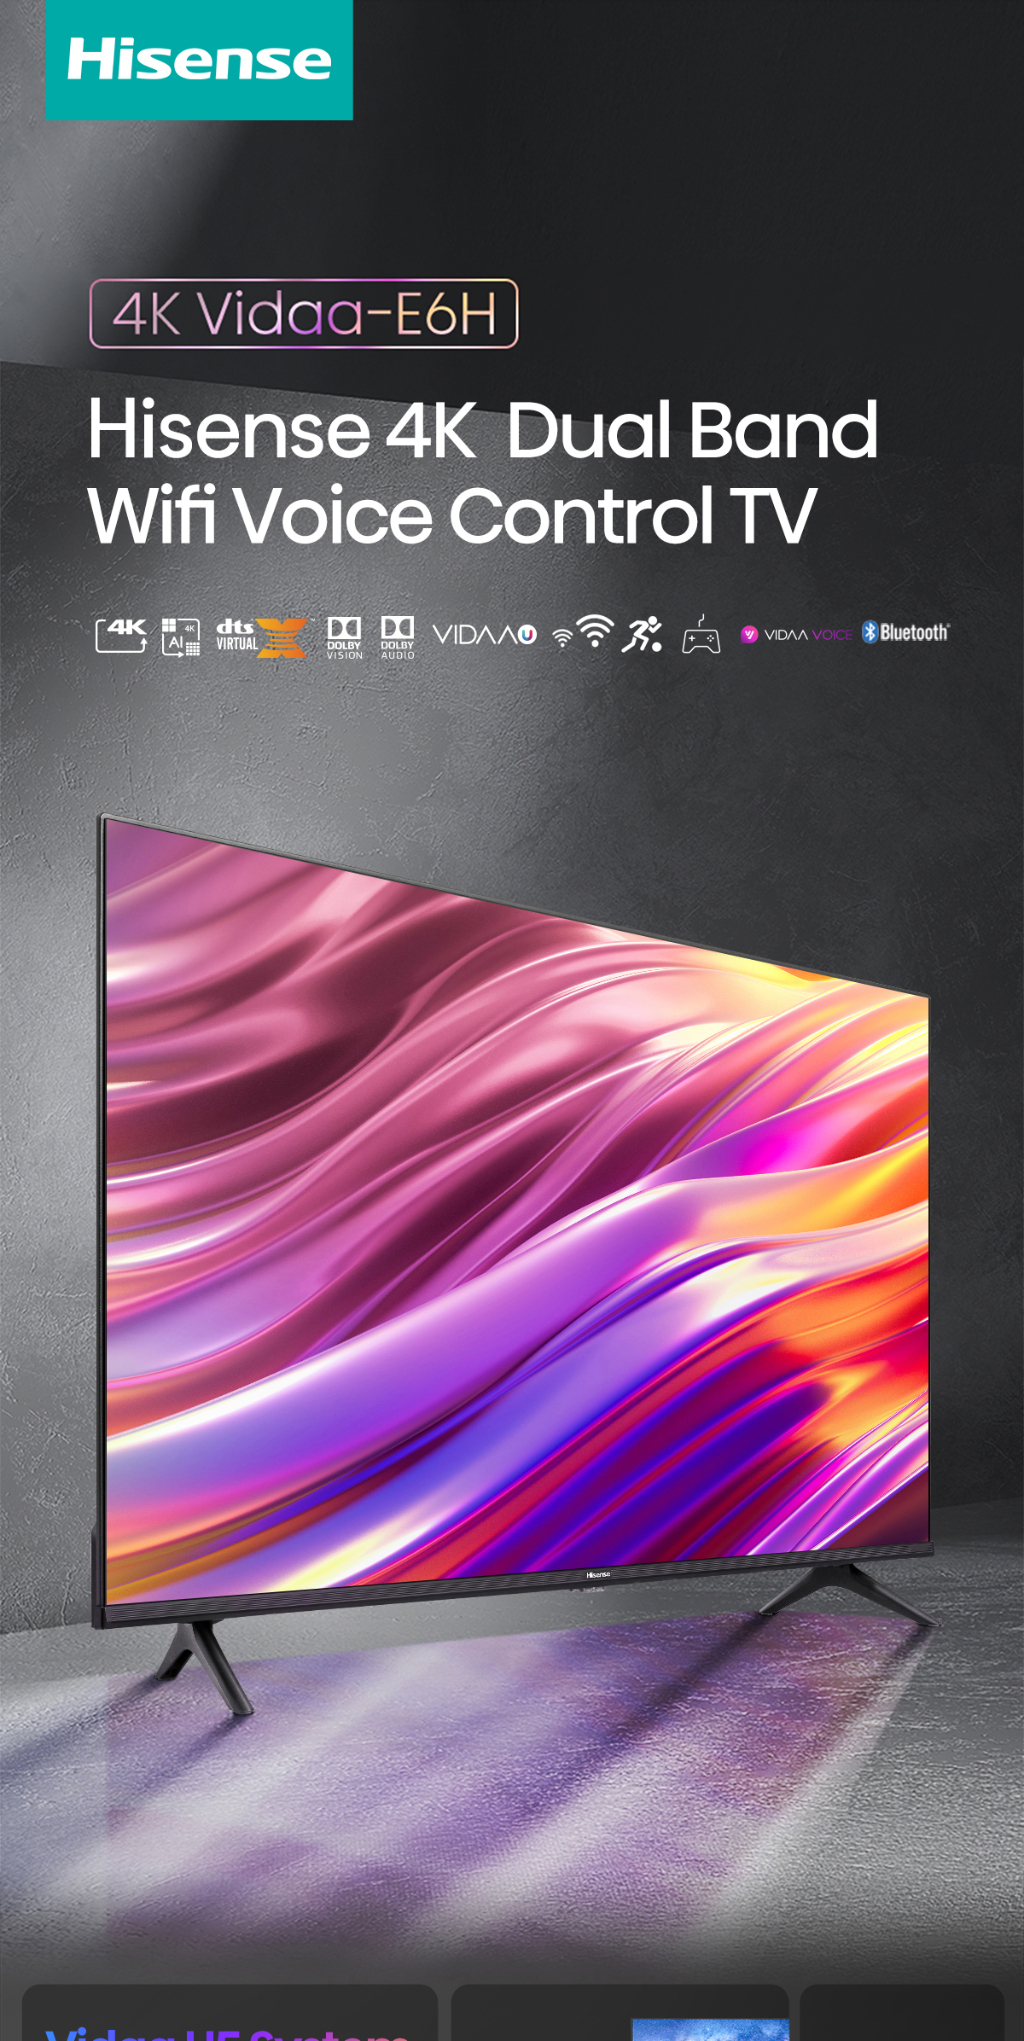 มุมมองเพิ่มเติมของสินค้า Hisense TV ทีวี 55 นิ้ว 4K Ultra HD Smart TV รุ่น 55E6H VIDAA U5 Voice Control Dolby Vision Netflix YouTube 2.4G+5G WIFI Build in /DVB-T2 / USB2.0 / HDMI /AV